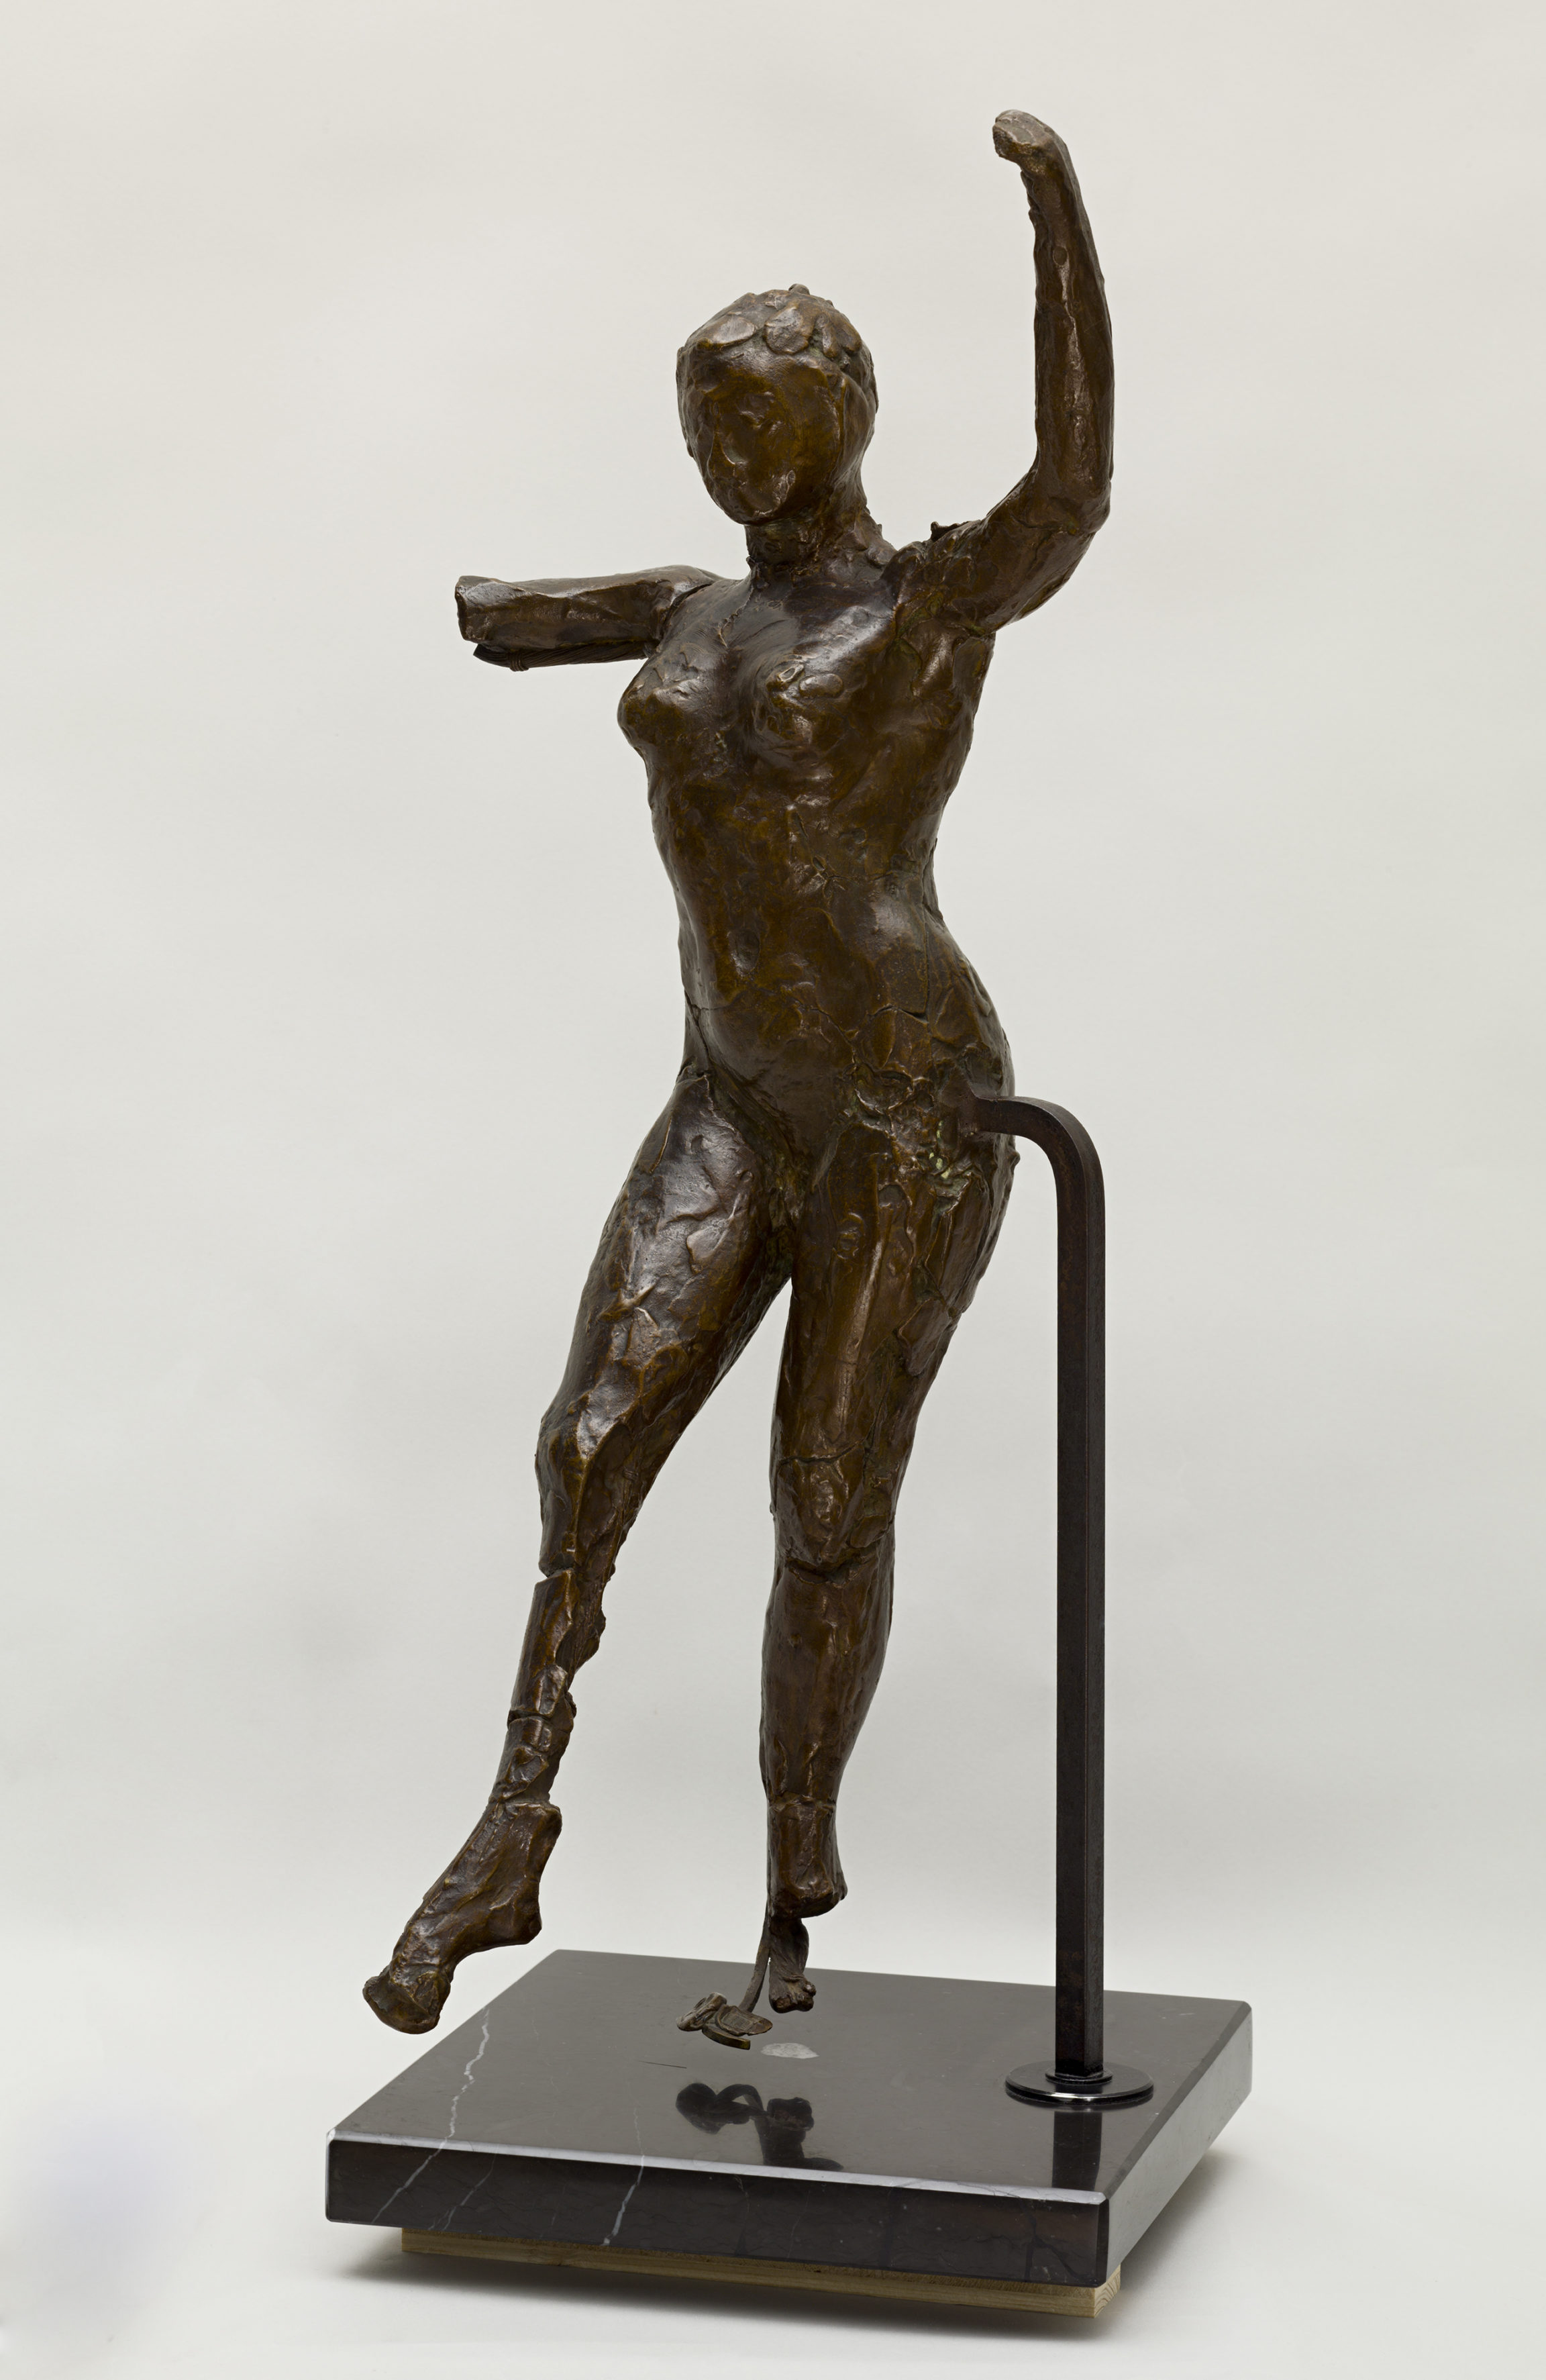 Danseuse Debout, Le Bras Derrière la Tête by Edgar Degas - 10 X 13 Inc –  Artistica Fine Art